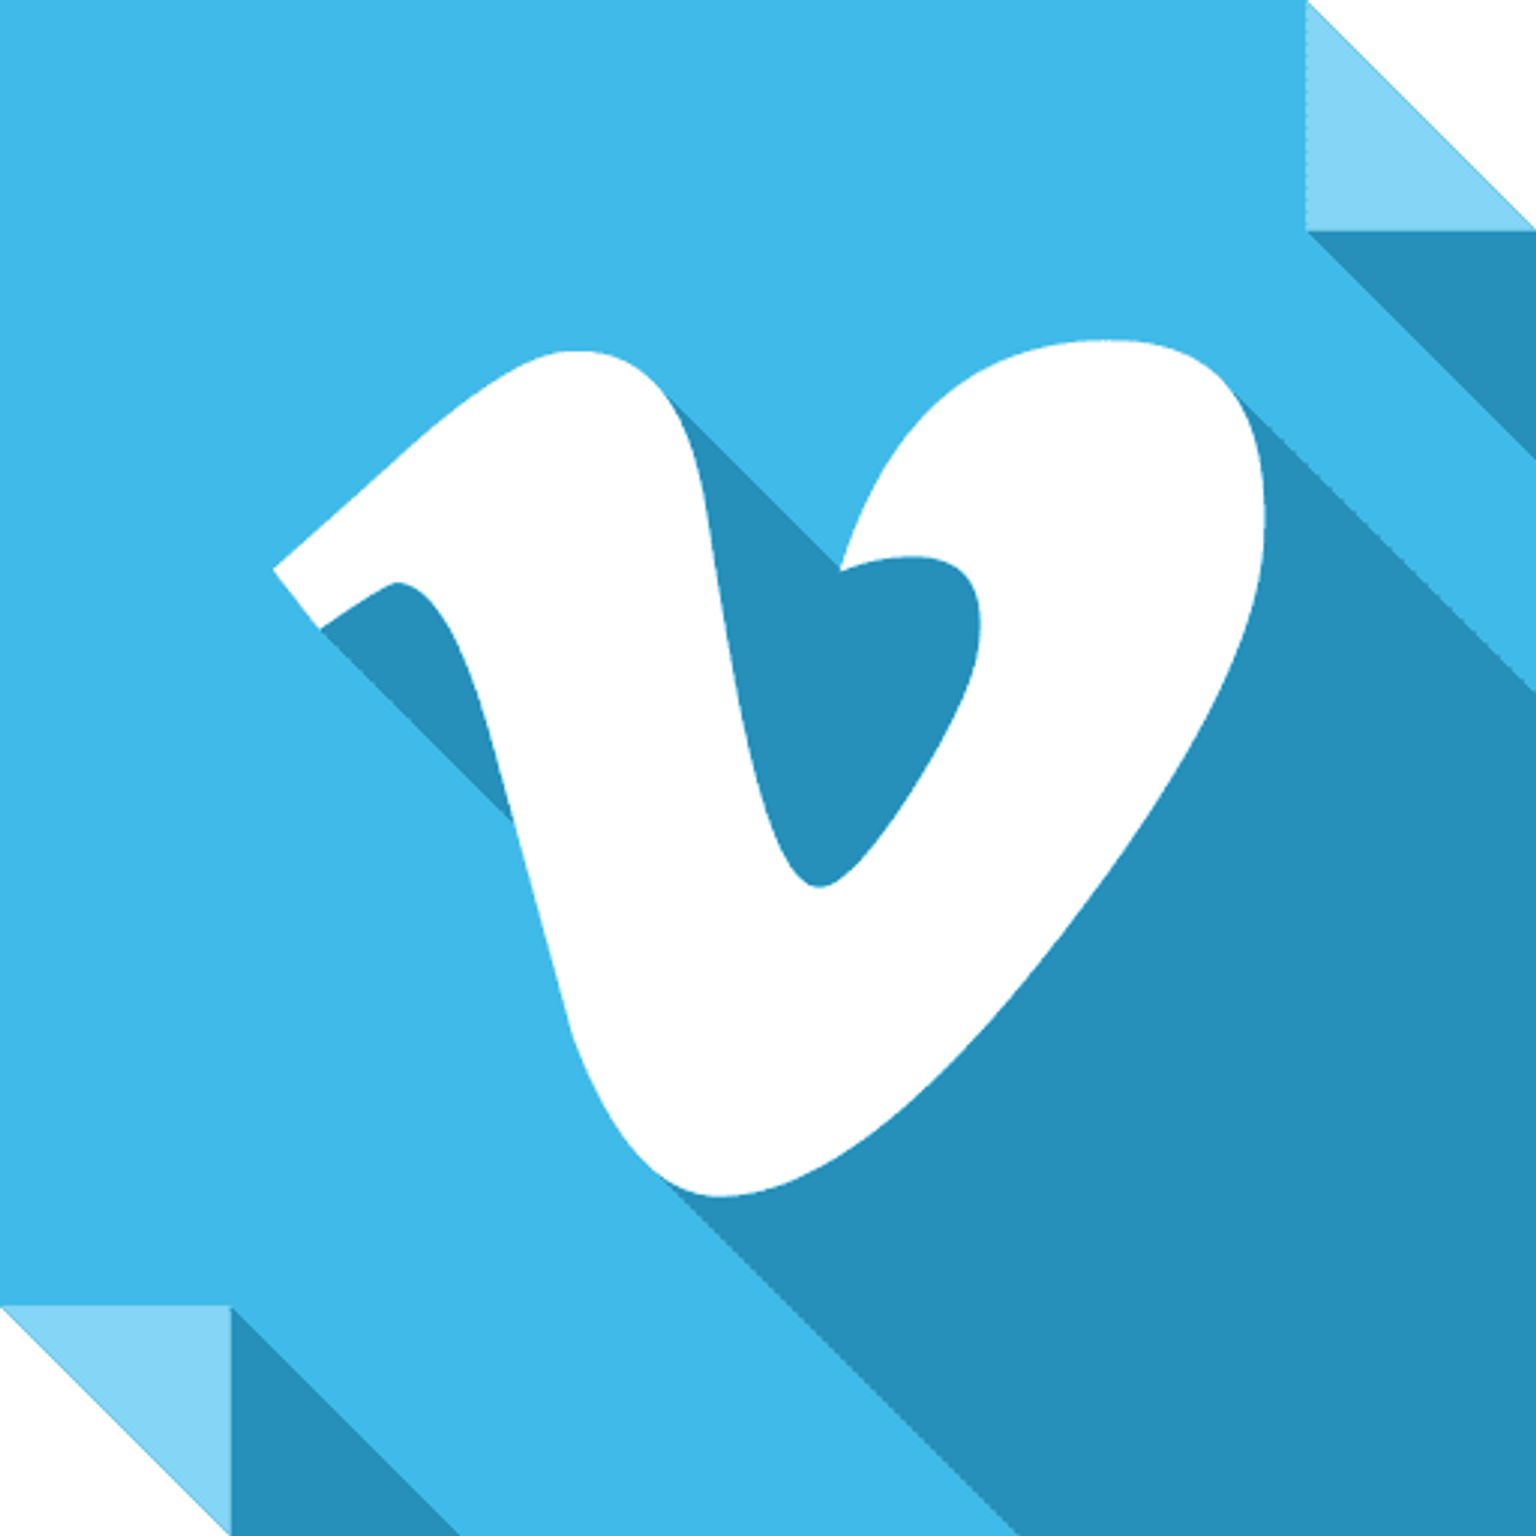 Blue image of Vimeo logo